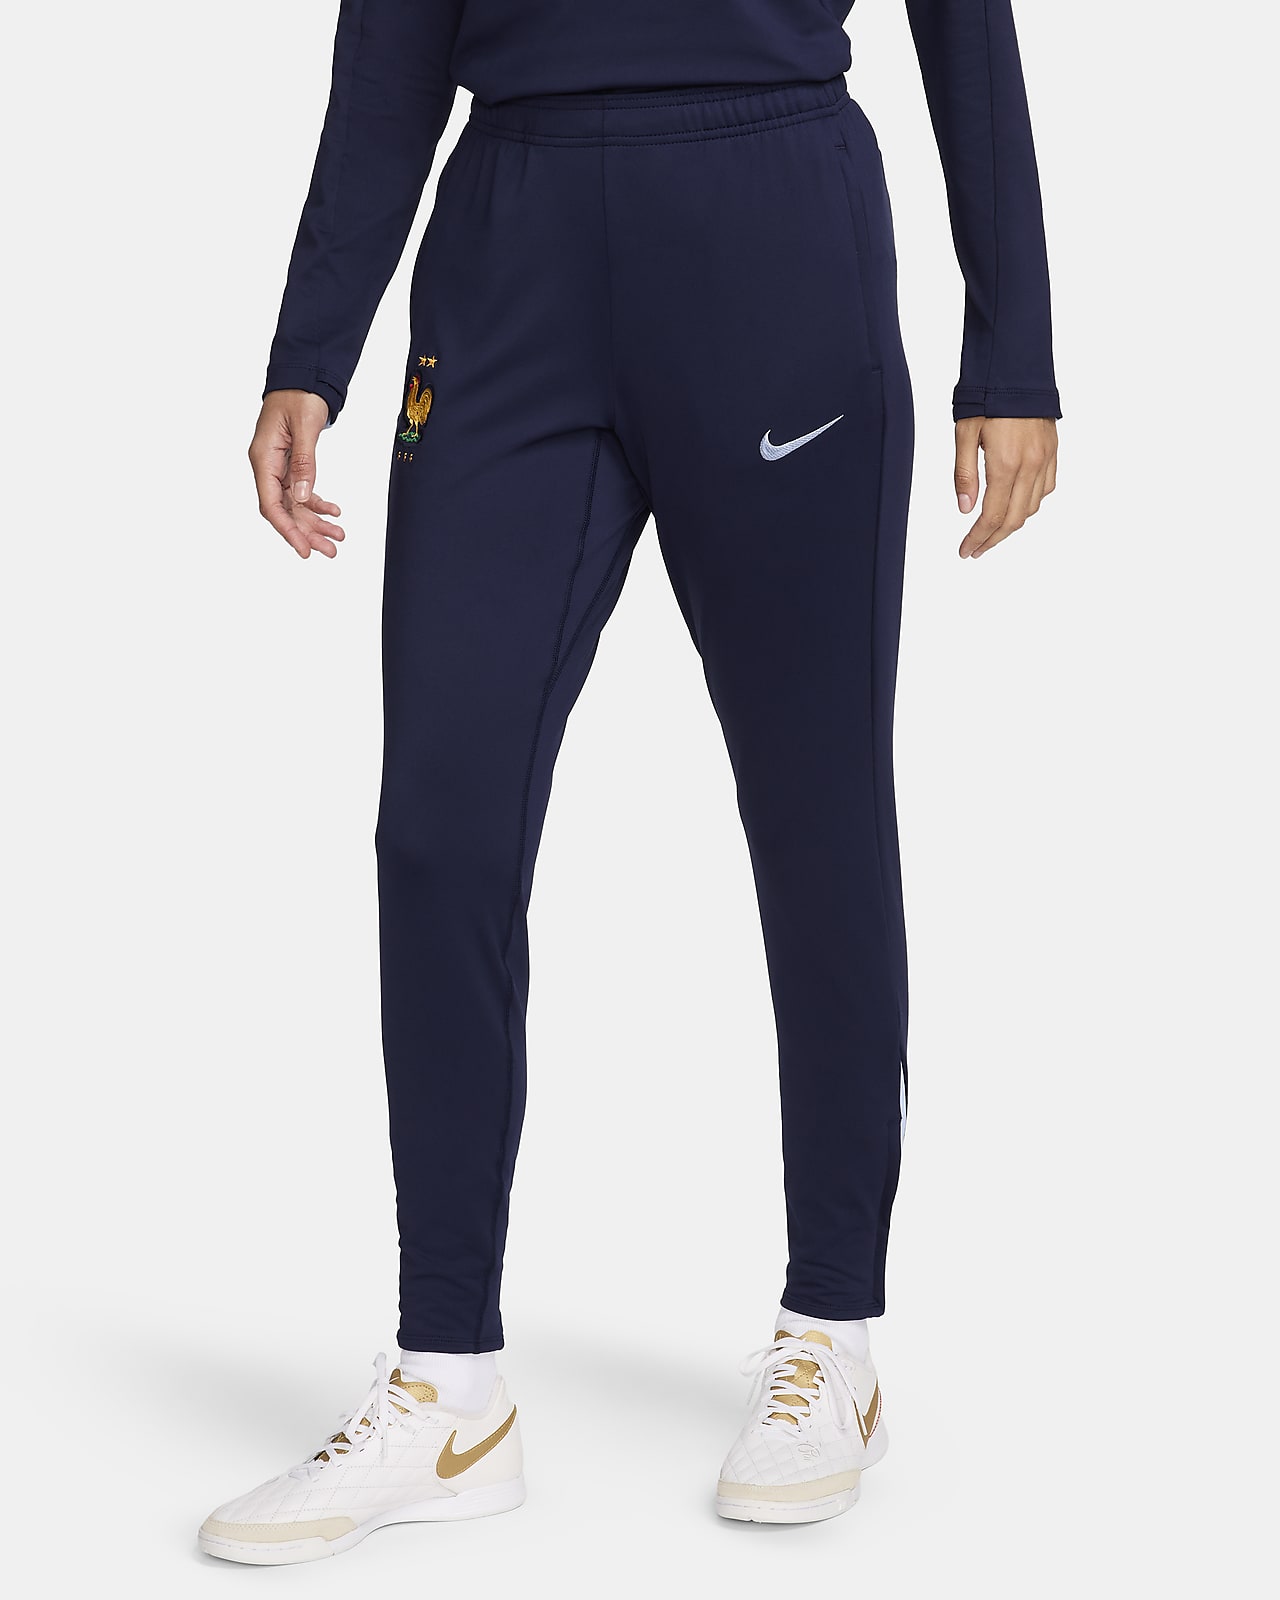 Γυναικείο ποδοσφαιρικό πλεκτό παντελόνι Γαλλία Nike Dri-FIT Strike